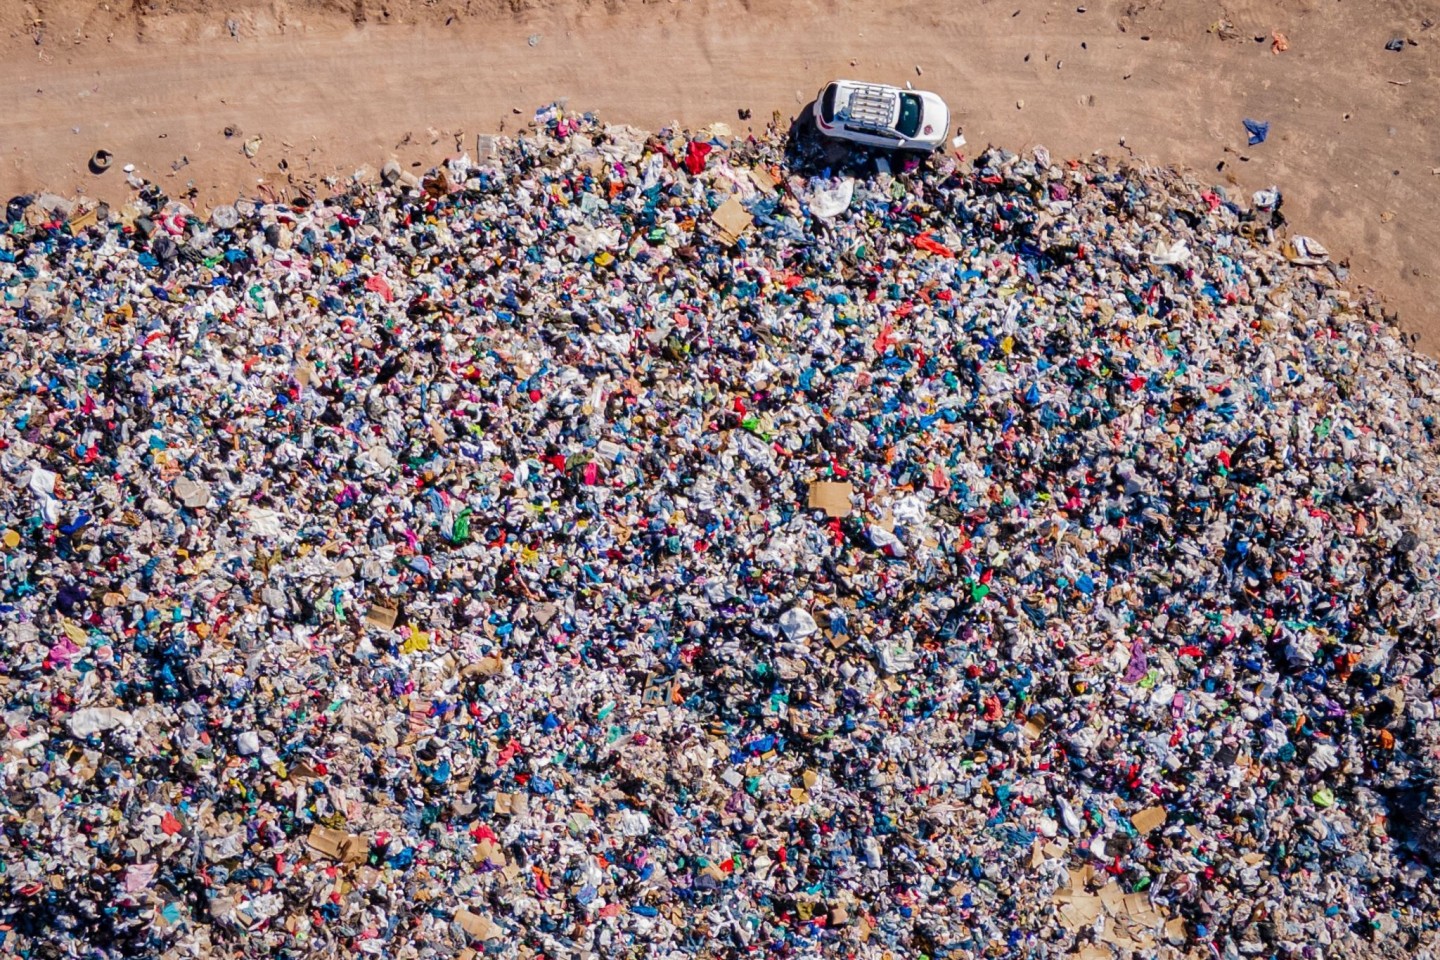 Gebrauchte Kleidungsstücke liegen der Müll-Deponie in der Wüste.